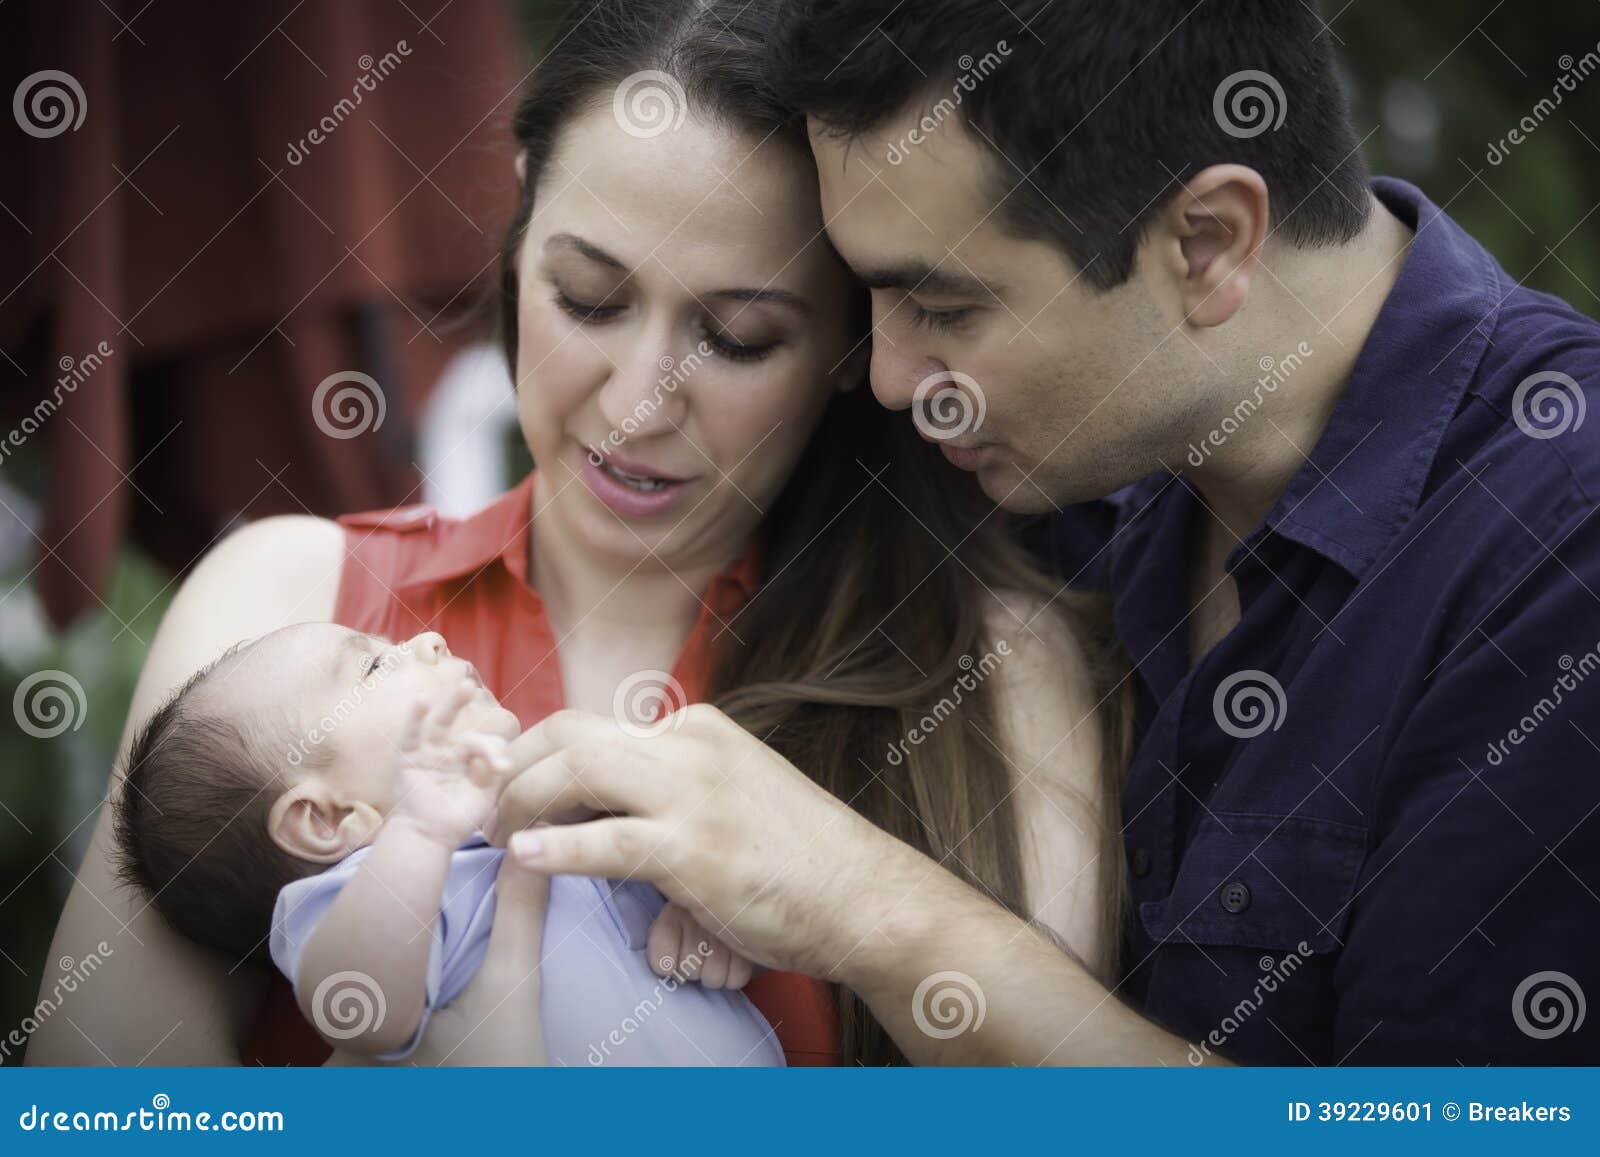 Madre Y Padre Que Juegan Con Su Hijo Imagen De Archivo Imagen De Lifestyle Adulto 39229601 